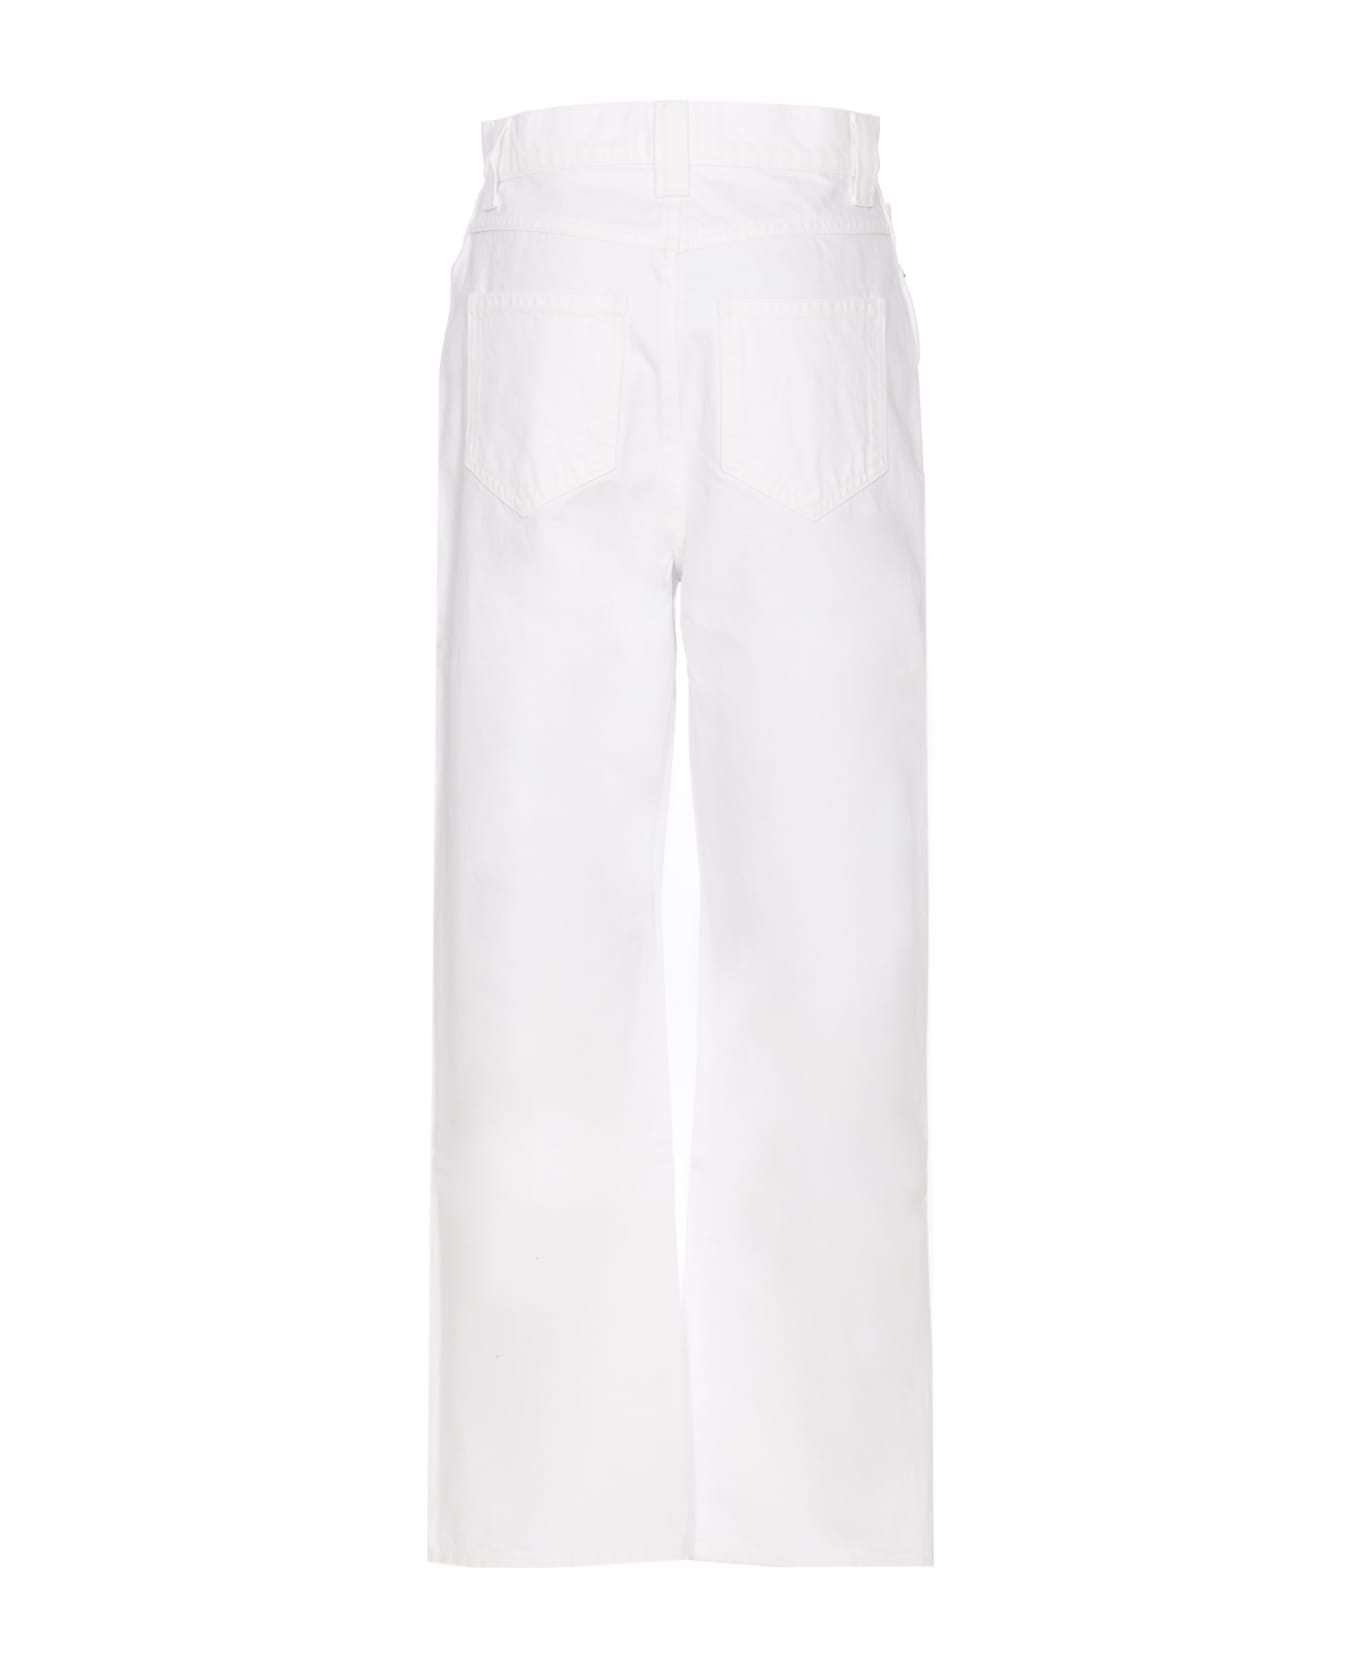 Khaite The Shalbi Jeans - White